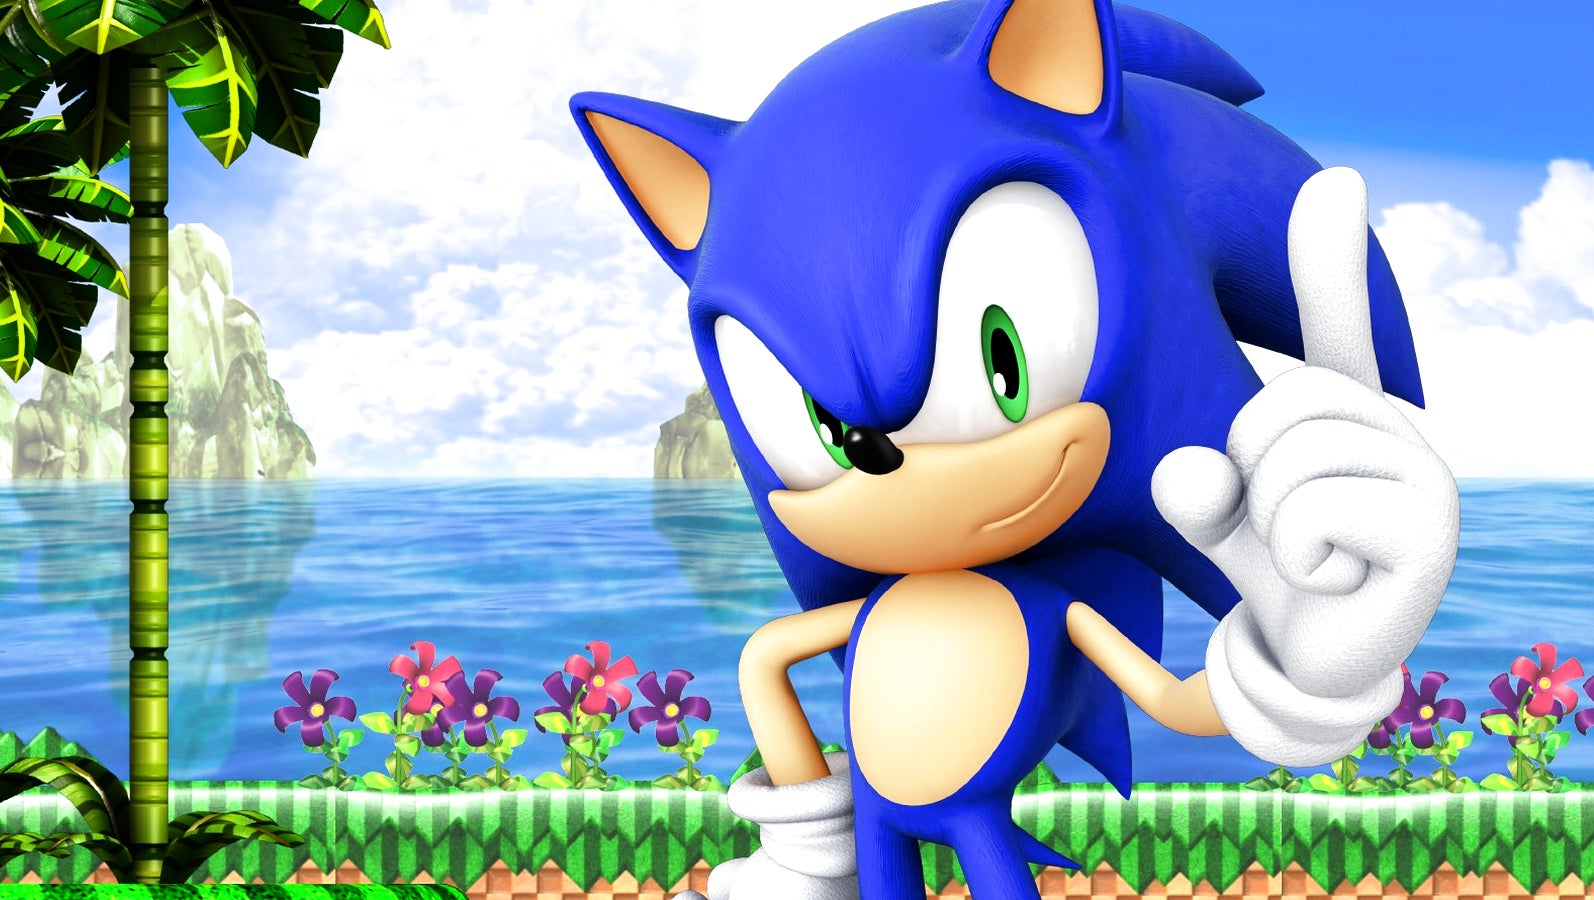 Bilder zu Lego-Set zu Sonic the Hedgehog ab dem 1. Januar 2022 erhältlich